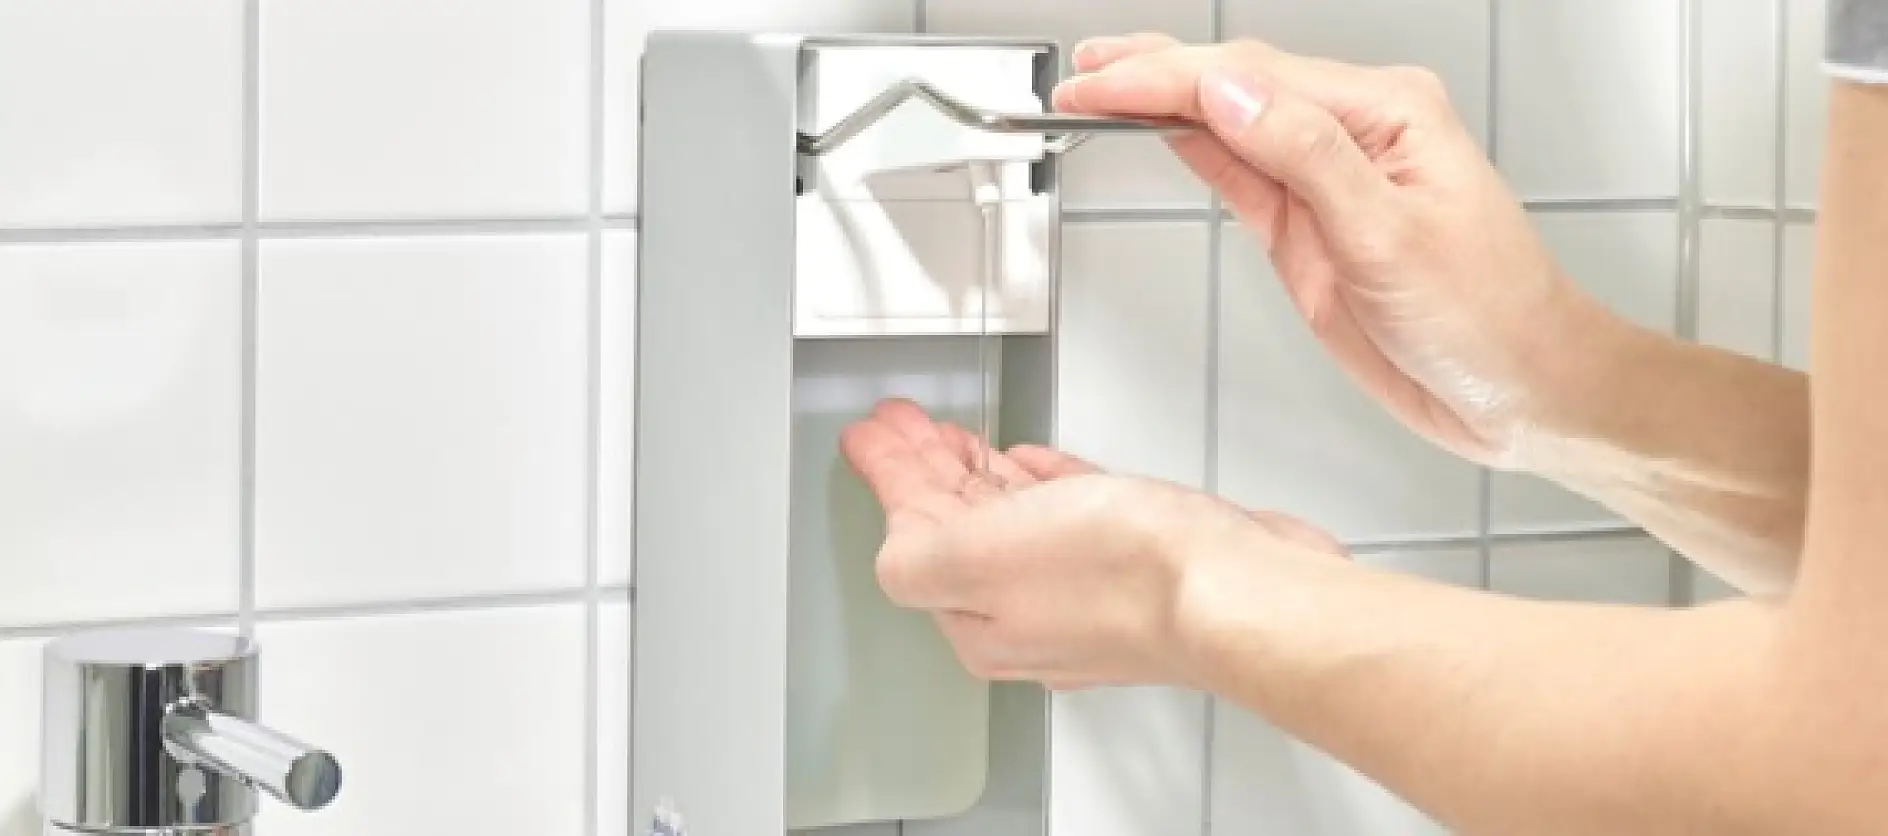 Monte los dispensadores de desinfectante de manos en áreas clave para facilitar el acceso